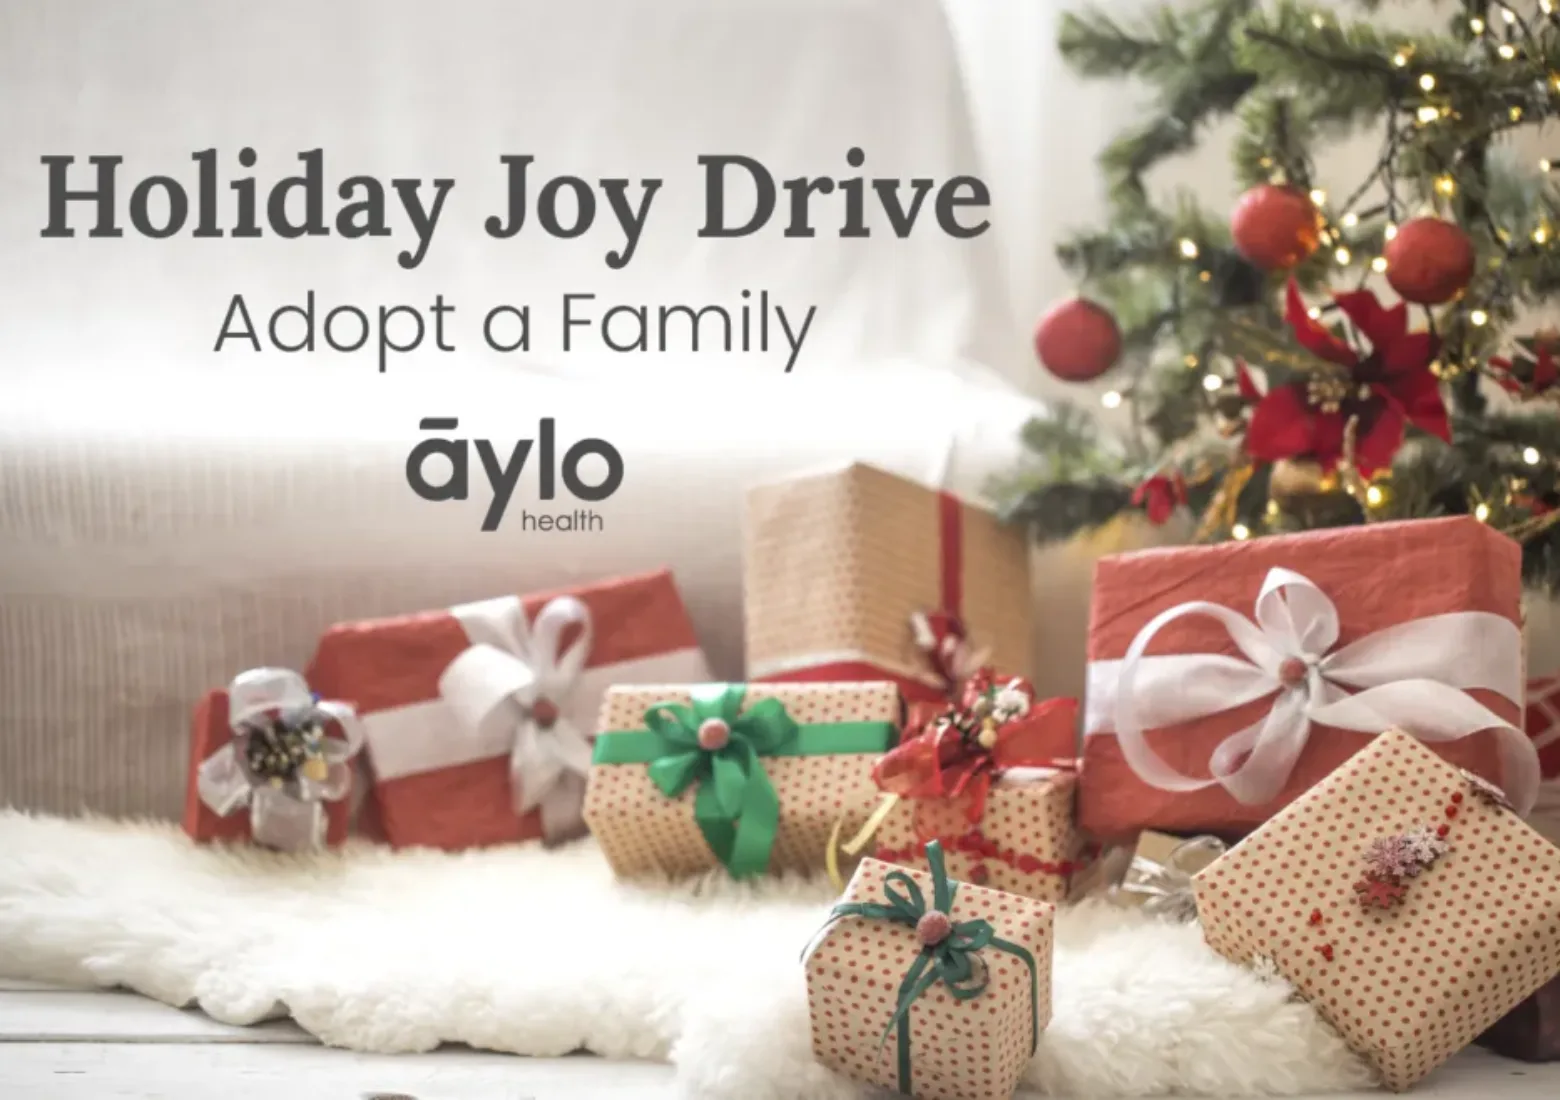 Aylo-Health-Gives-Back-This-Season-Through-Holiday-Joy-Drive_